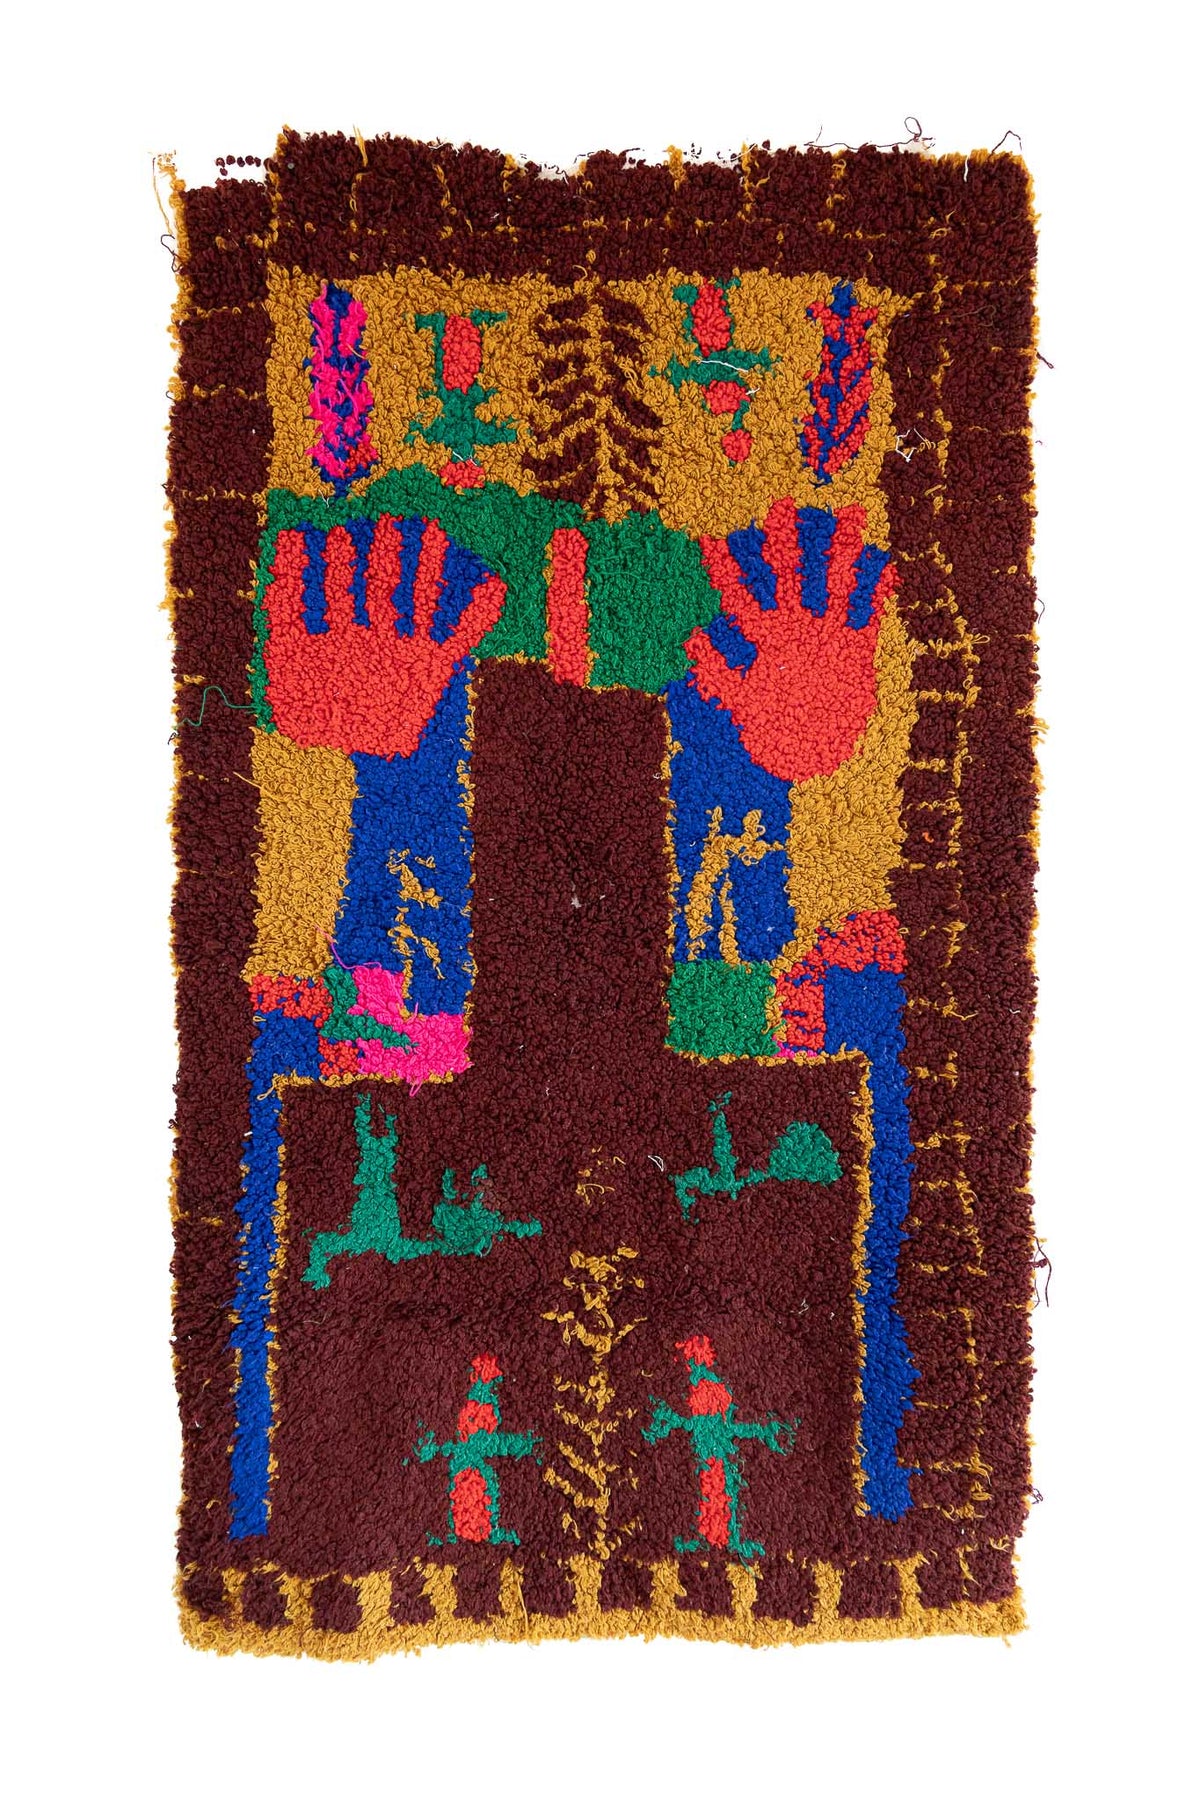 Zindekh, Hada, approx. 2.4 x 1.5 feet (75 x 48 cm)